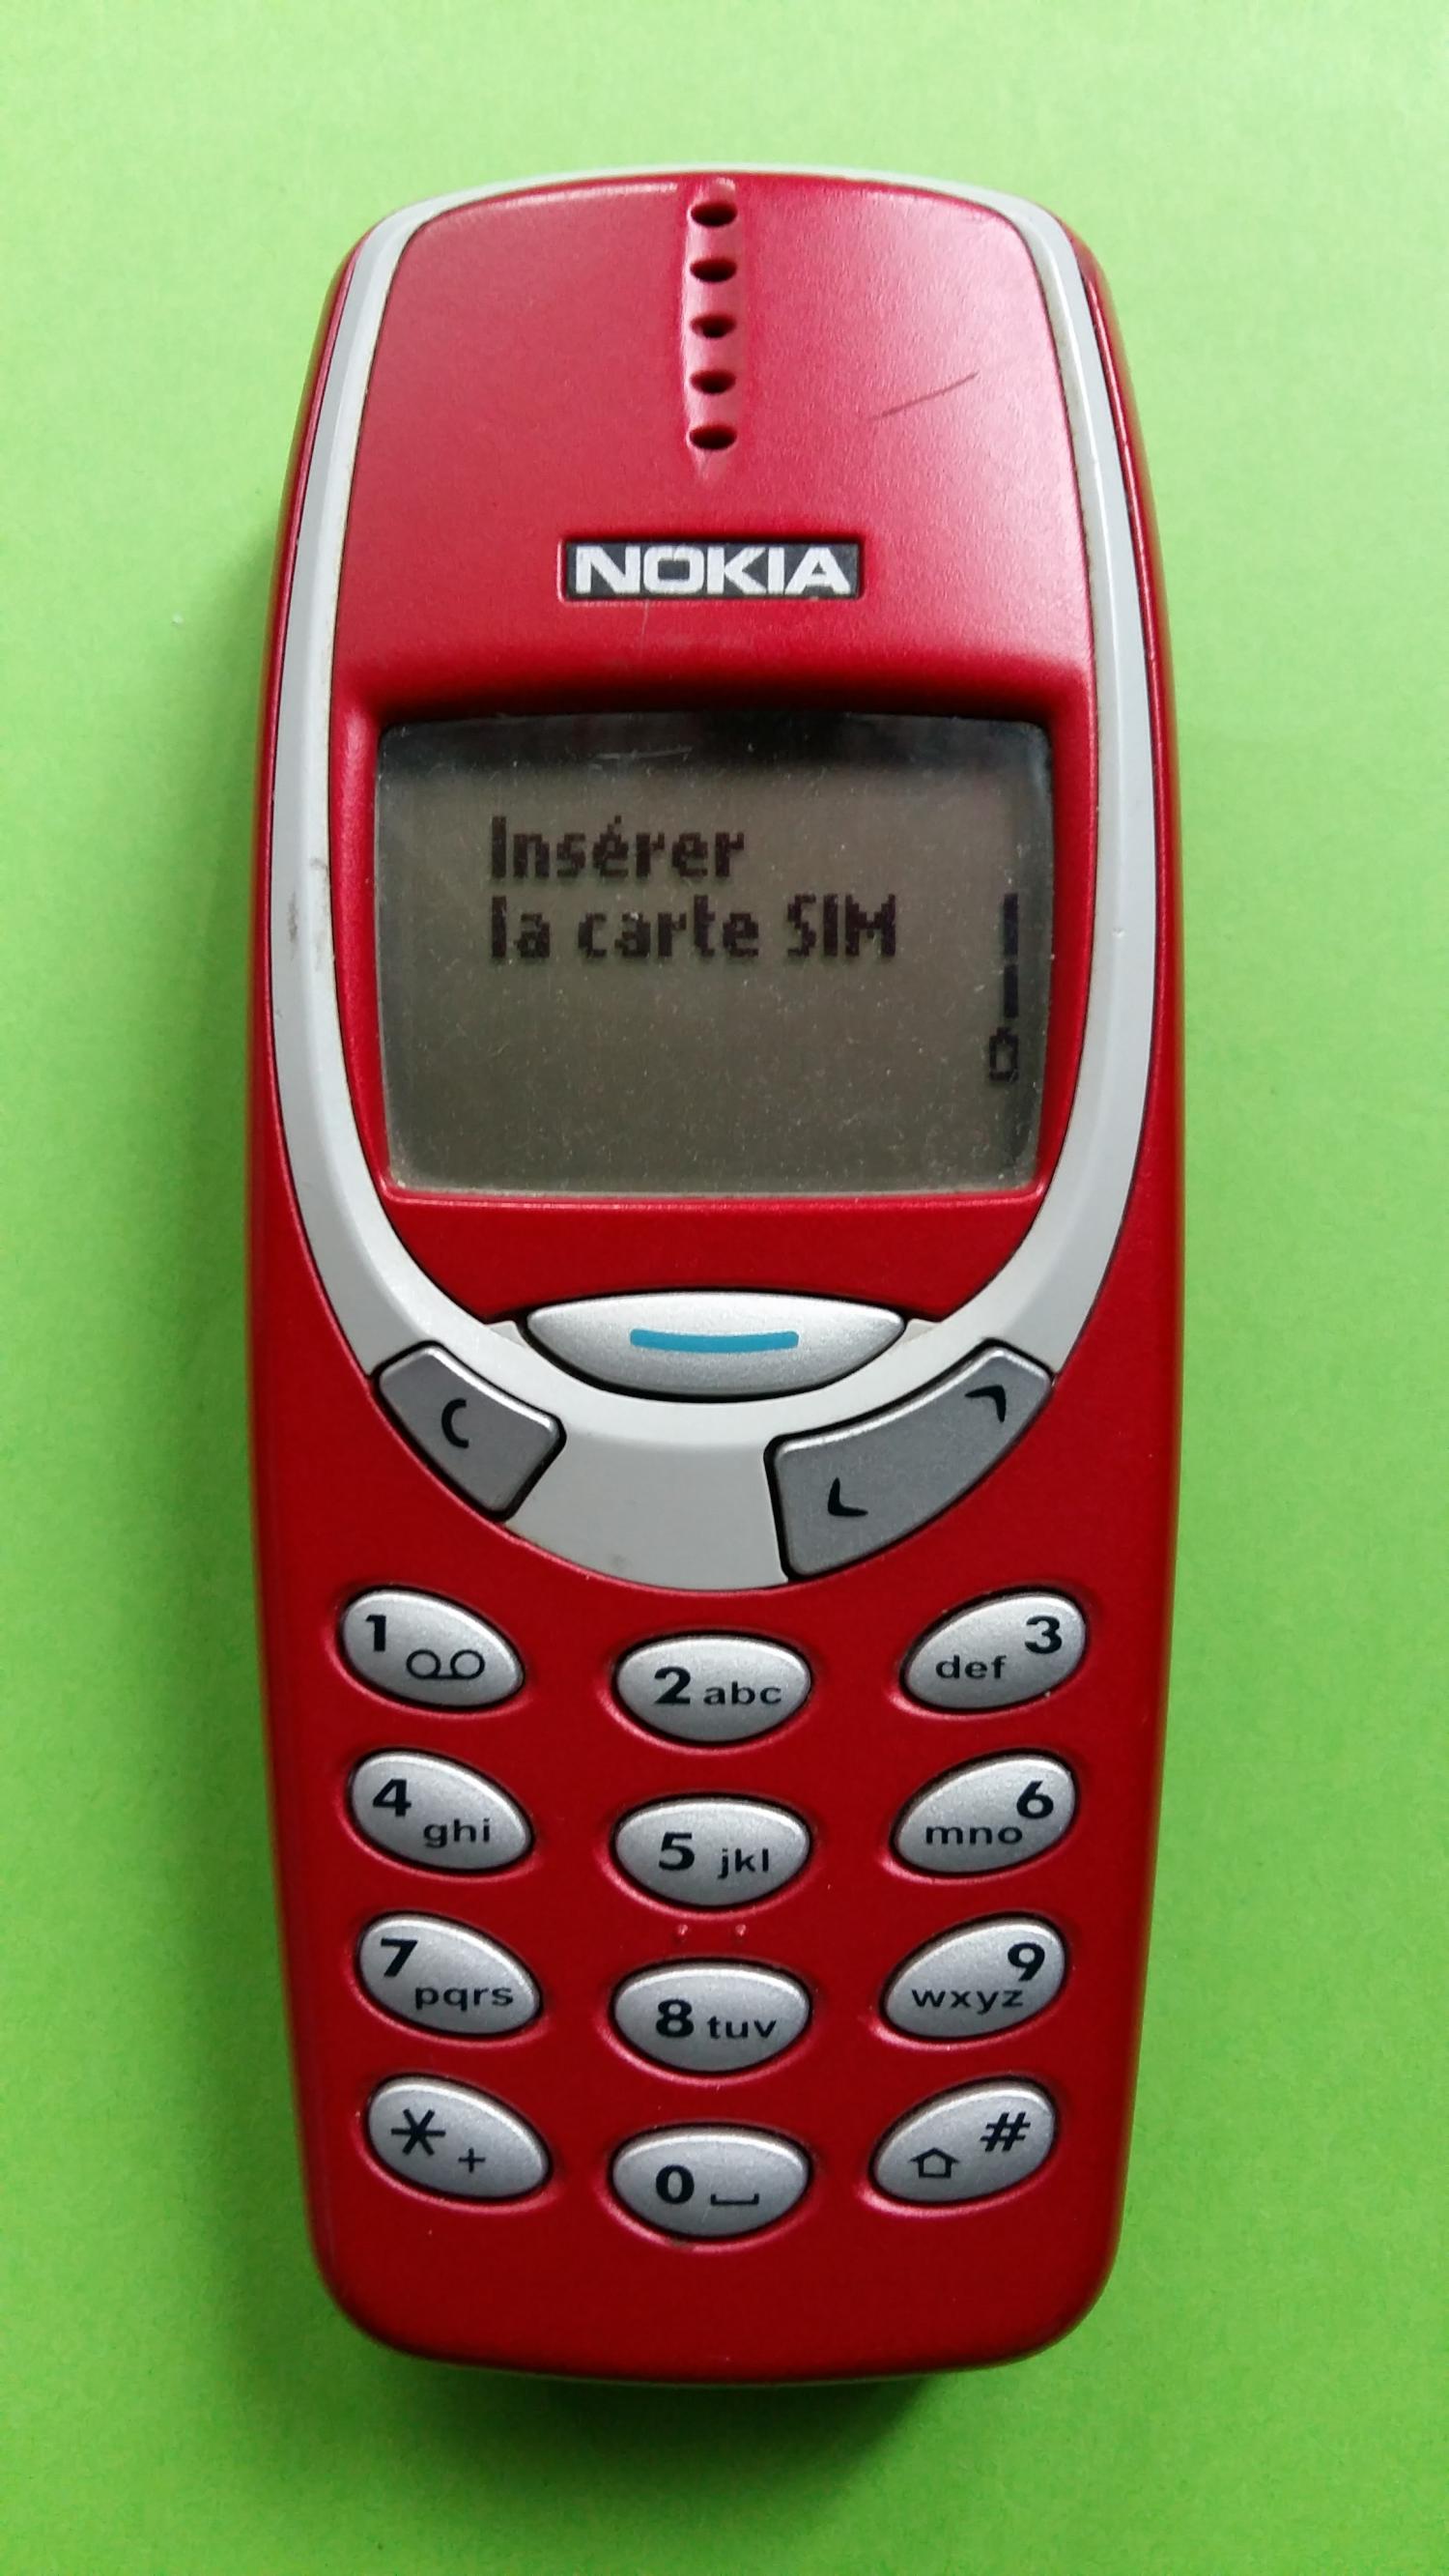 image-7306802-Nokia 3330 (26)1.jpg